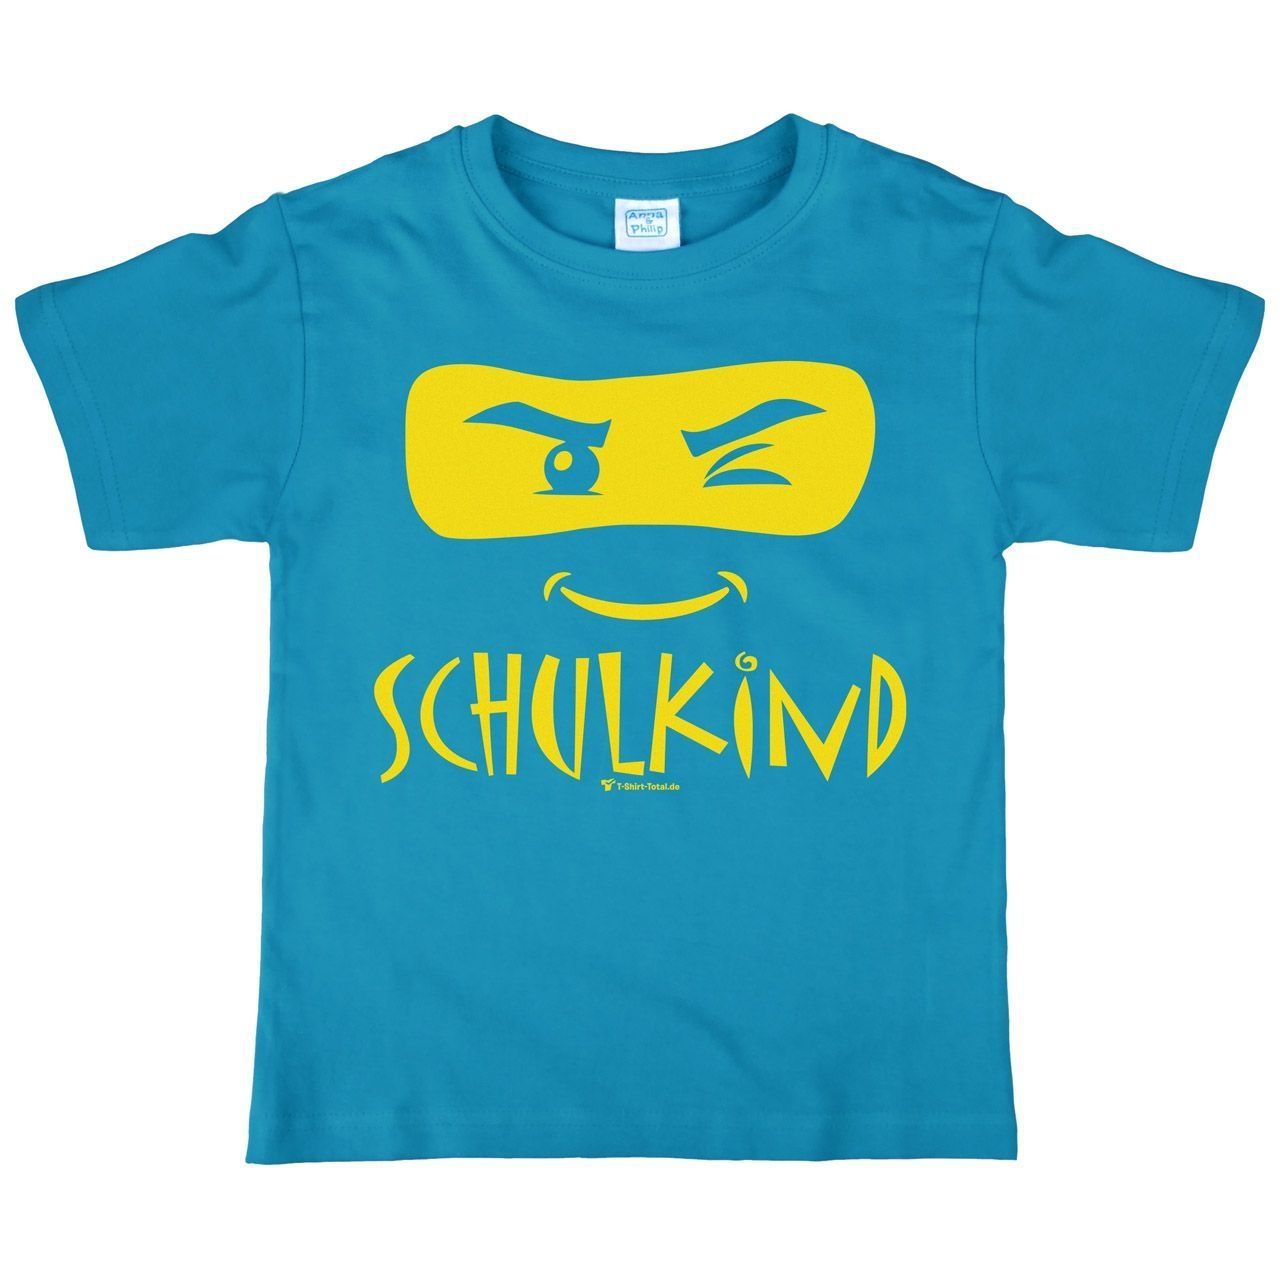 Schulkind Maske Kinder T-Shirt türkis 122 / 128